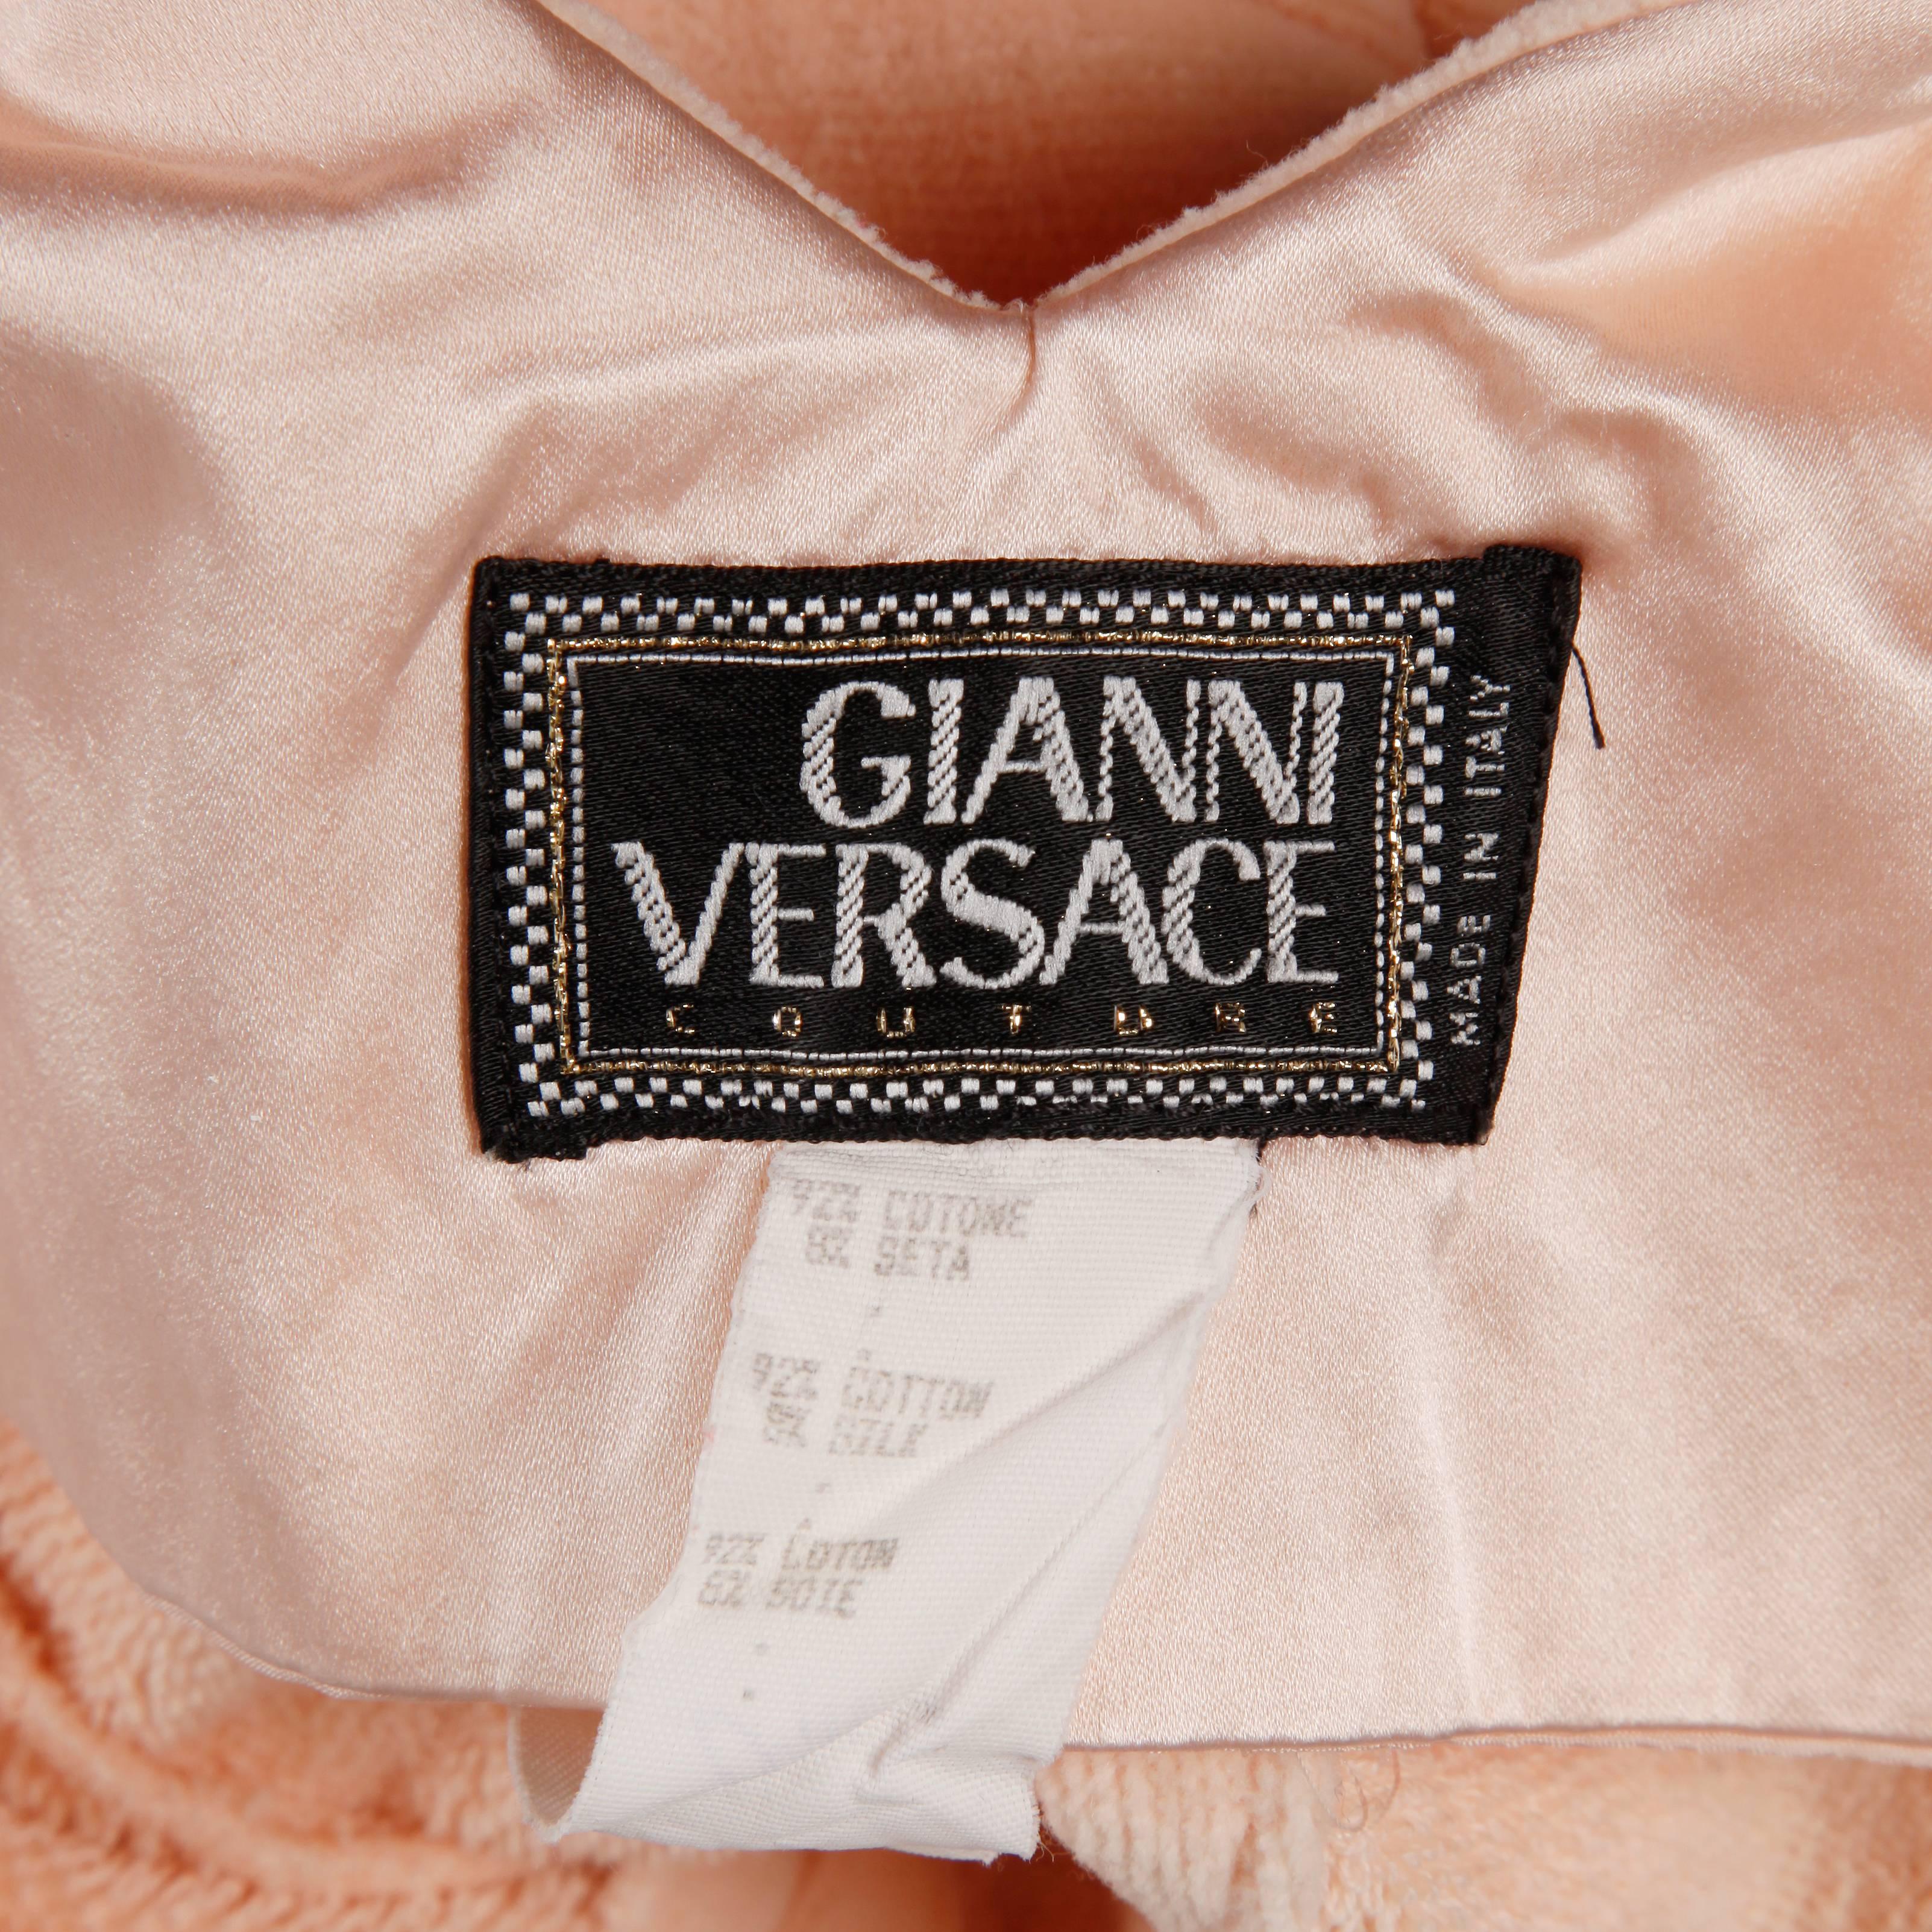 Robe body con super douce rose pâle en chenille veloutée de Gianni Versace Couture. La coupe est si flatteuse ! Simple, élégant et chic.

Détails : 

Entièrement doublé
Taille Fermeture à glissière et crochet
Taille marquée : 6
Taille estimée